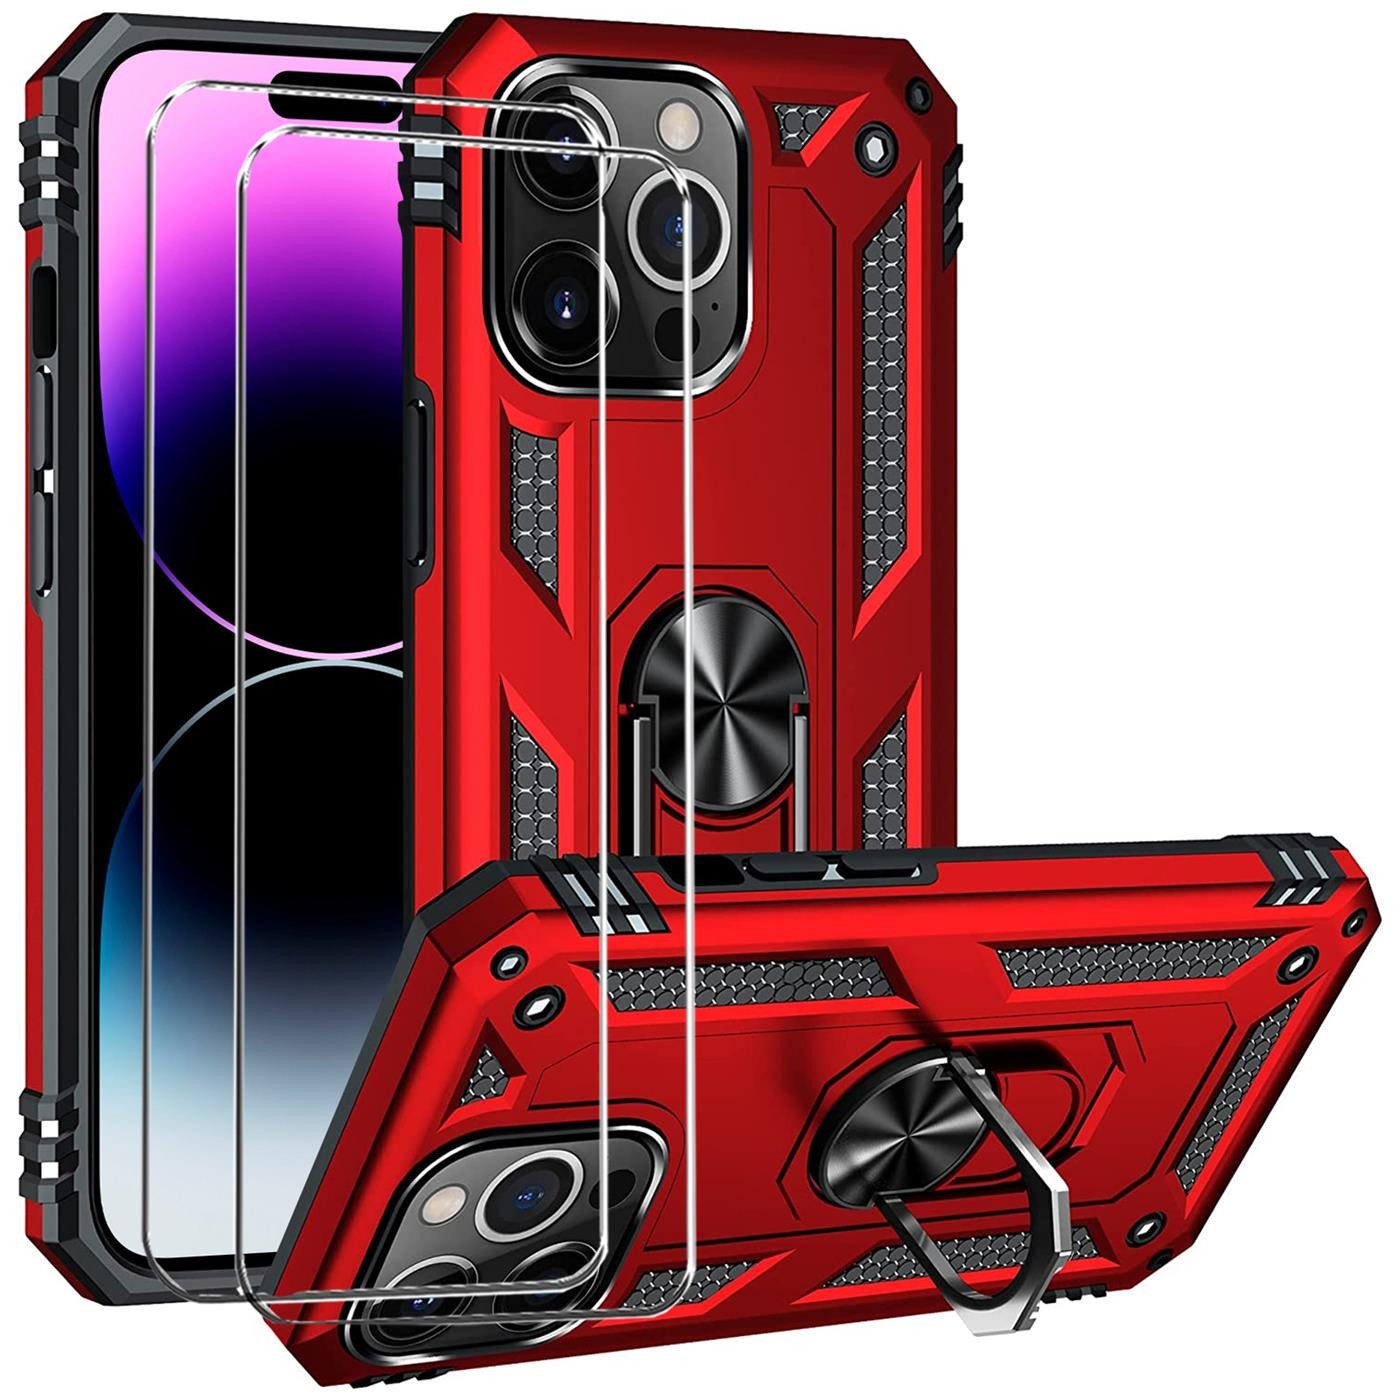 CoolGadget Handyhülle Rot als 2in1 Schutz Cover Set für das Apple iPhone 7 4,7 Zoll, 2x 9H Glas Display Schutz Folie + 1x TPU Case Hülle für iPhone 7